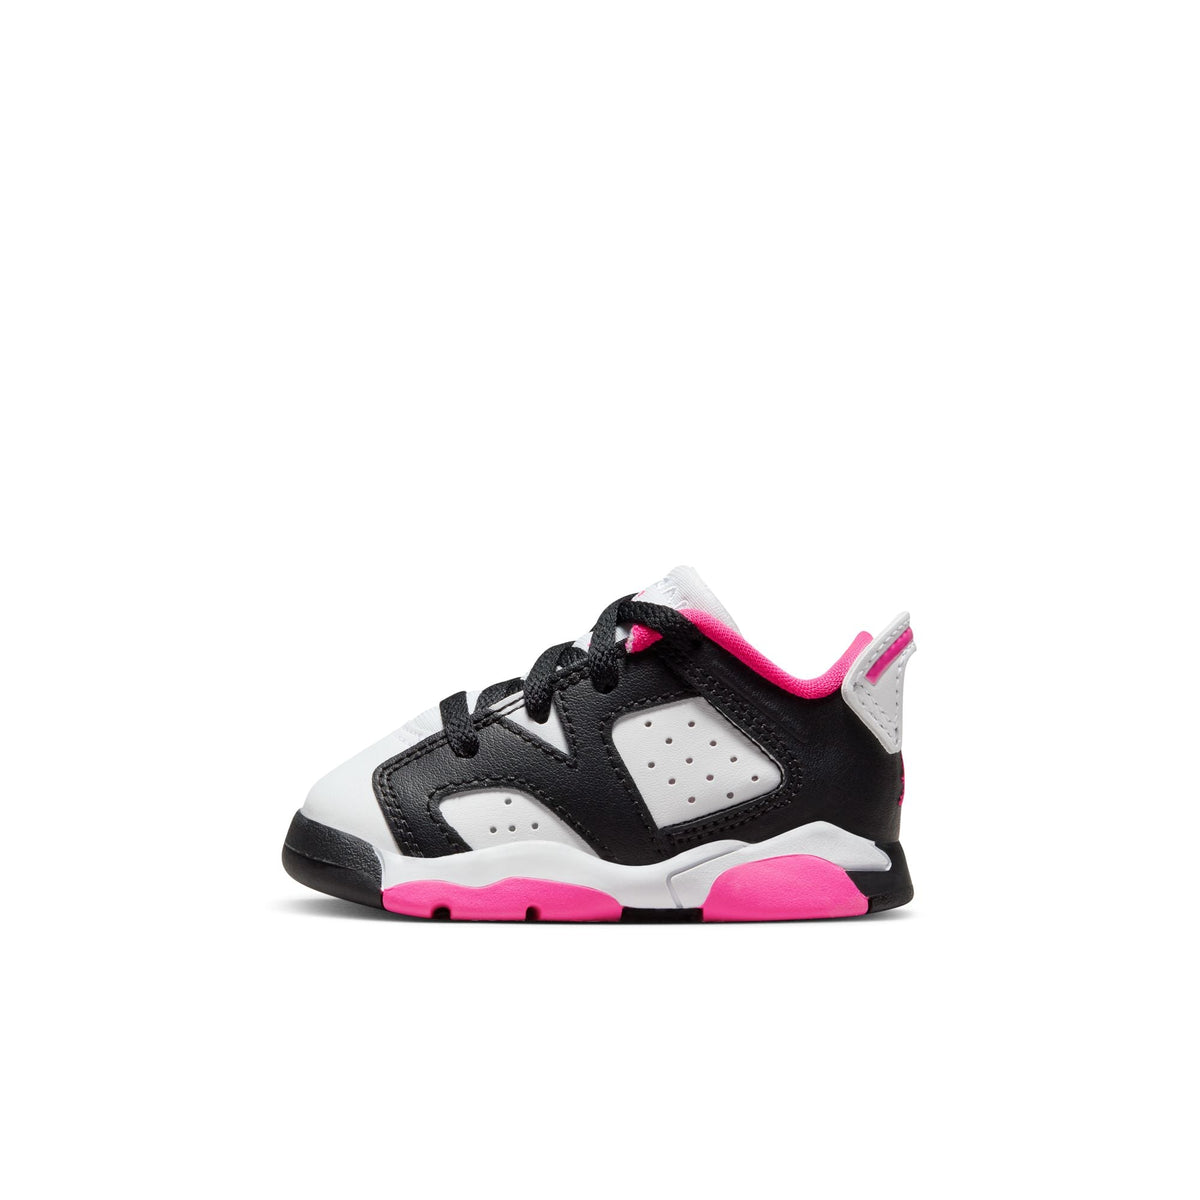 Jordan 6 Retro Low Baby/Toddler Shoes